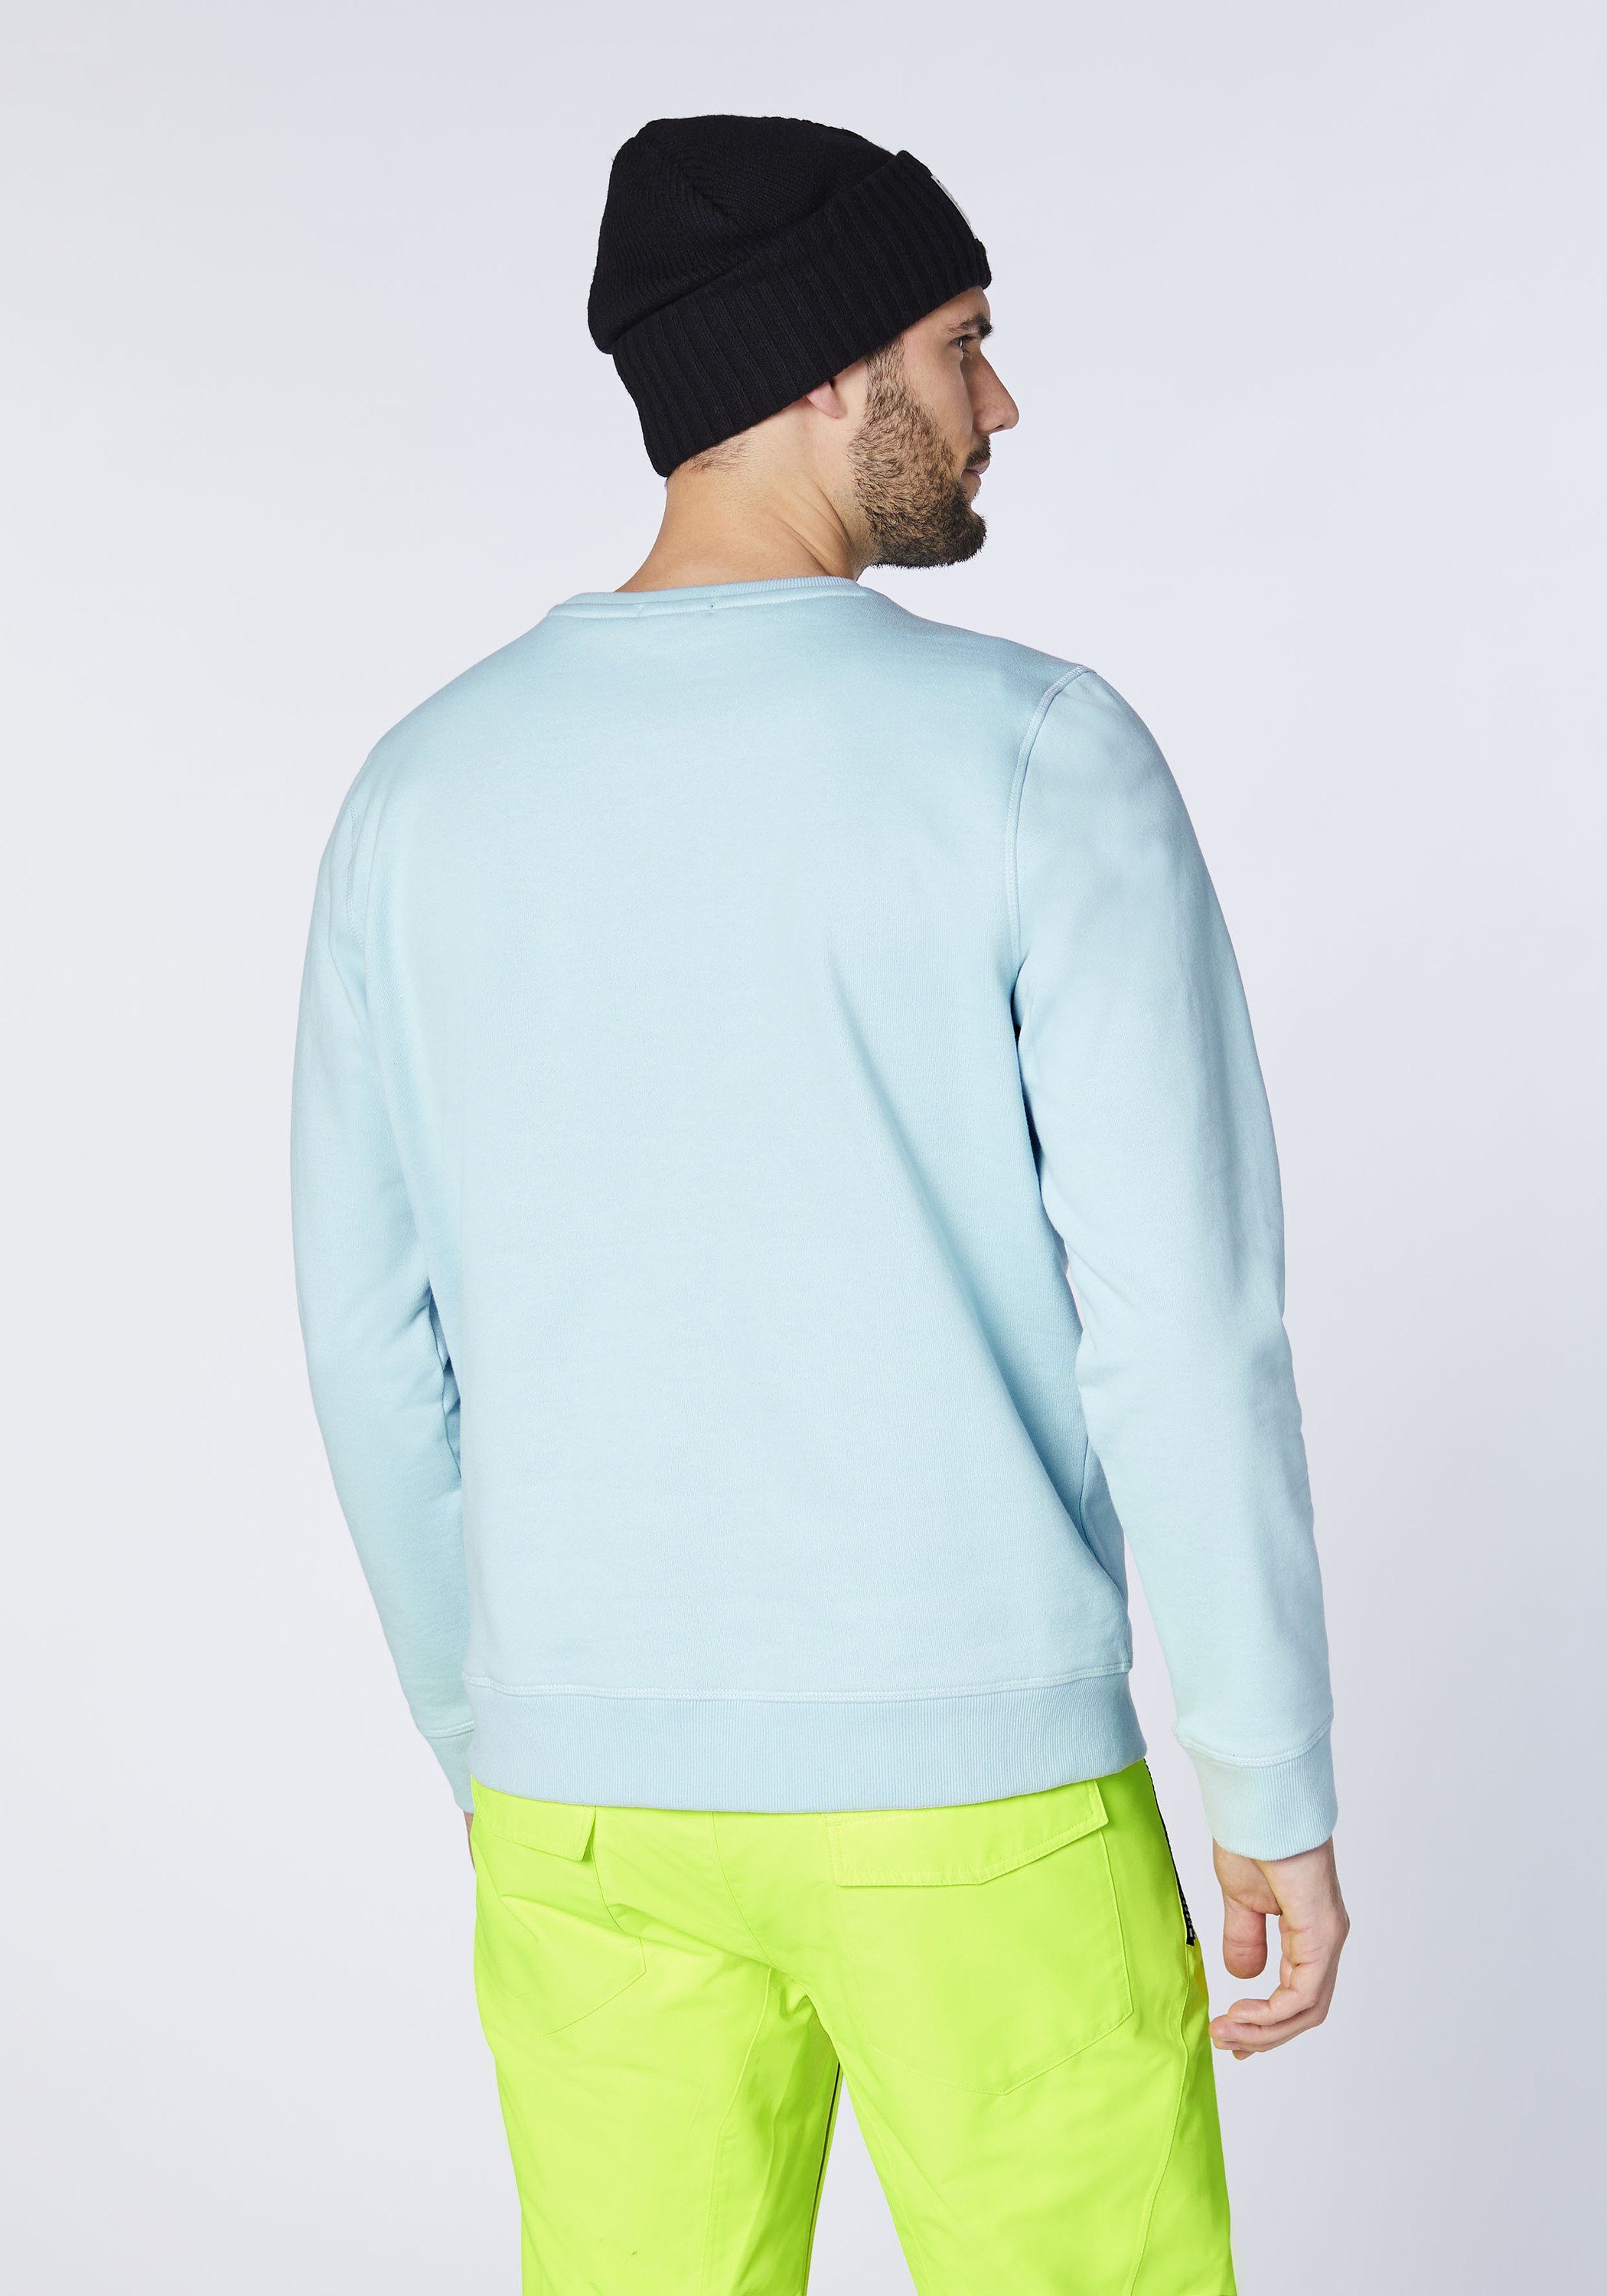 Chiemsee Sweatshirt Sweatshirt im trendigen blau 1 mittel PlusMinus-Design